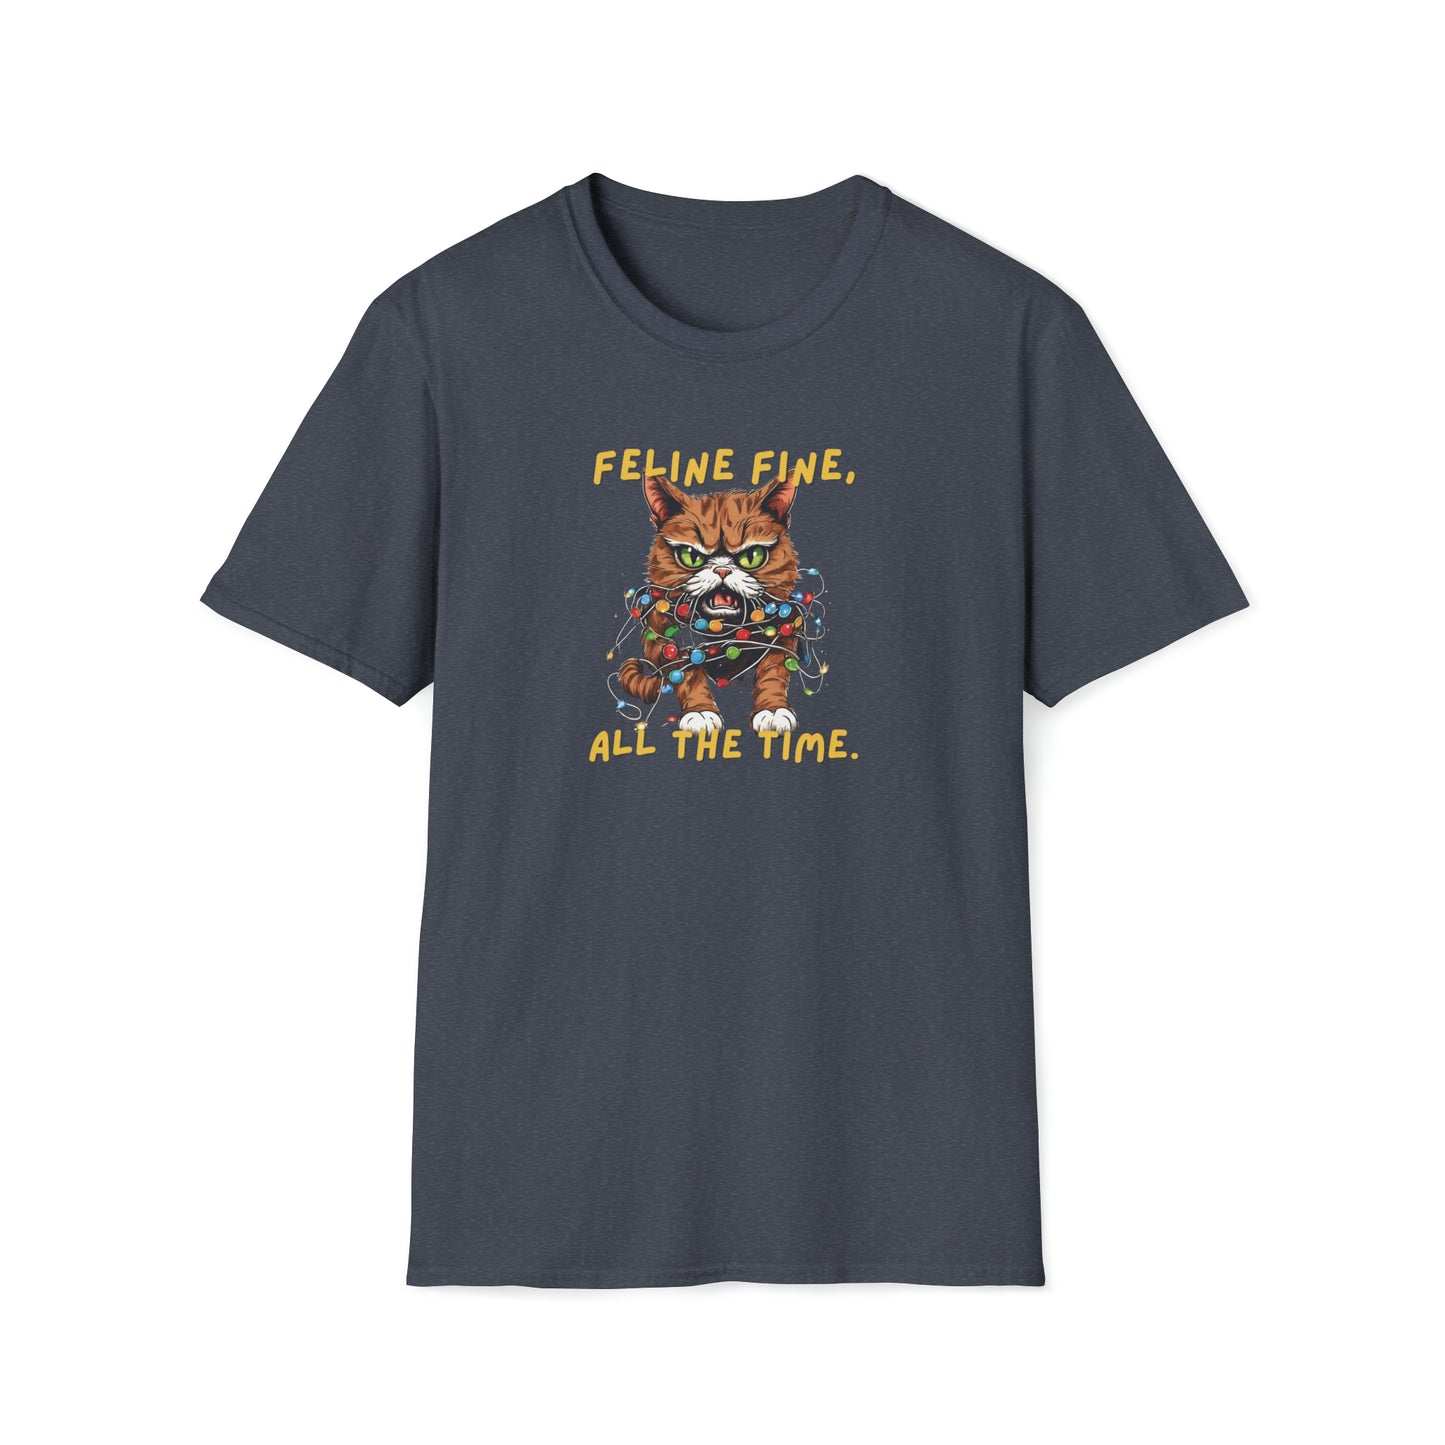 Feline Fine, All The Time T-Shirt, Funny Christmas Tshirt, Cat Christmas Shirt